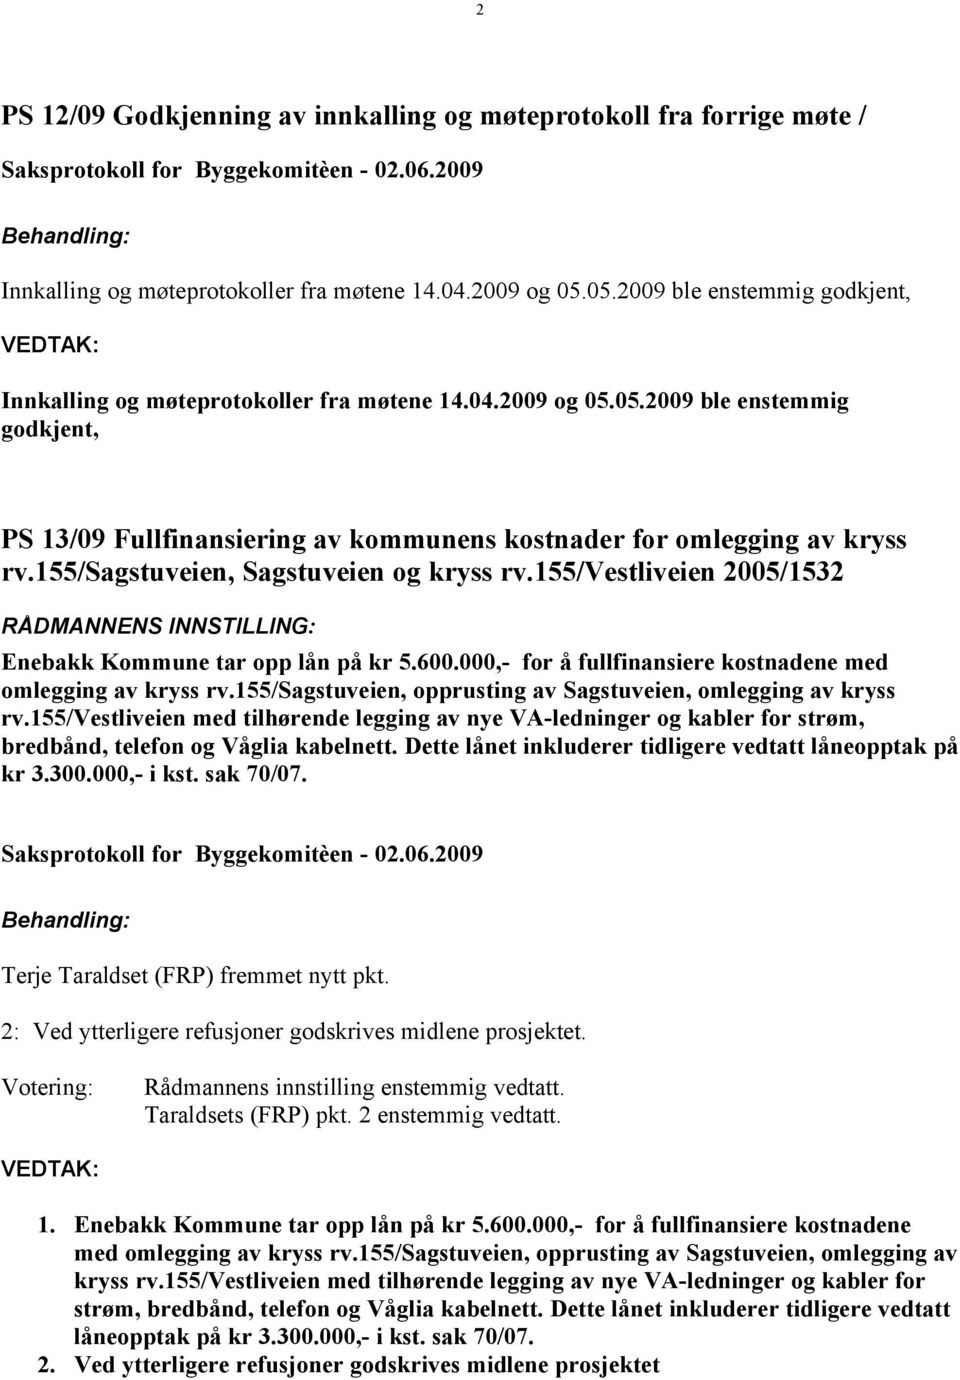 155/sagstuveien, Sagstuveien og kryss rv.155/vestliveien 2005/1532 RÅDMANNENS INNSTILLING: Enebakk Kommune tar opp lån på kr 5.600.000,- for å fullfinansiere kostnadene med omlegging av kryss rv.